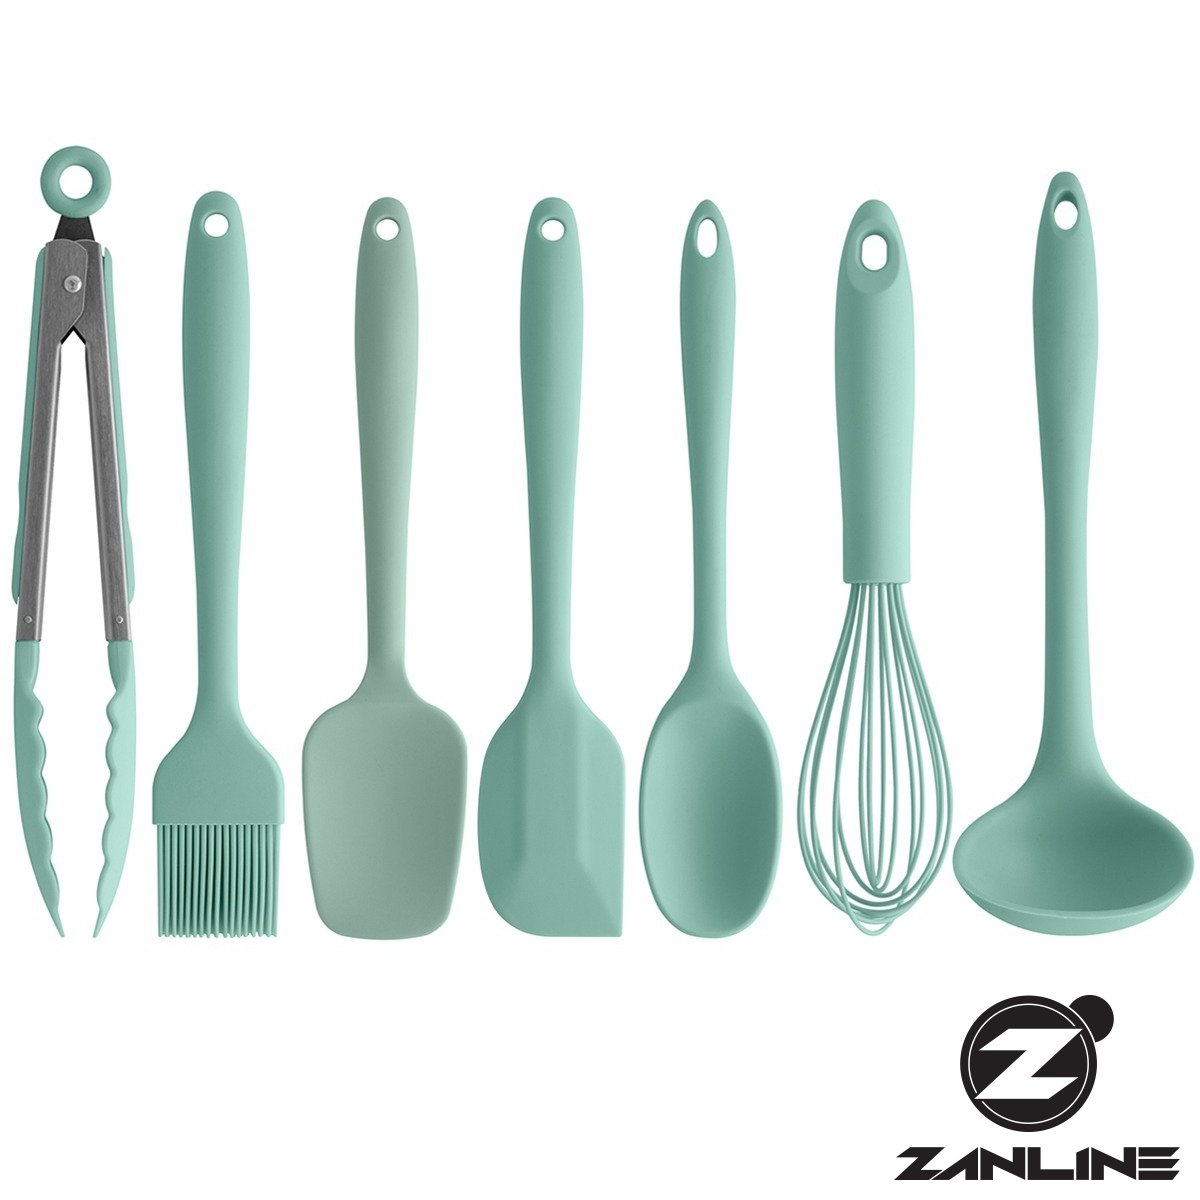 Alie praticidade e beleza com o conjunto de utensílios para cozinha. Disponível em quatro lindas cores.

zanline.com.br/busca?search=c…

#Cozinha #Utensíliosdecozinha #Acessoriosdecozinha #Ou #Zanline